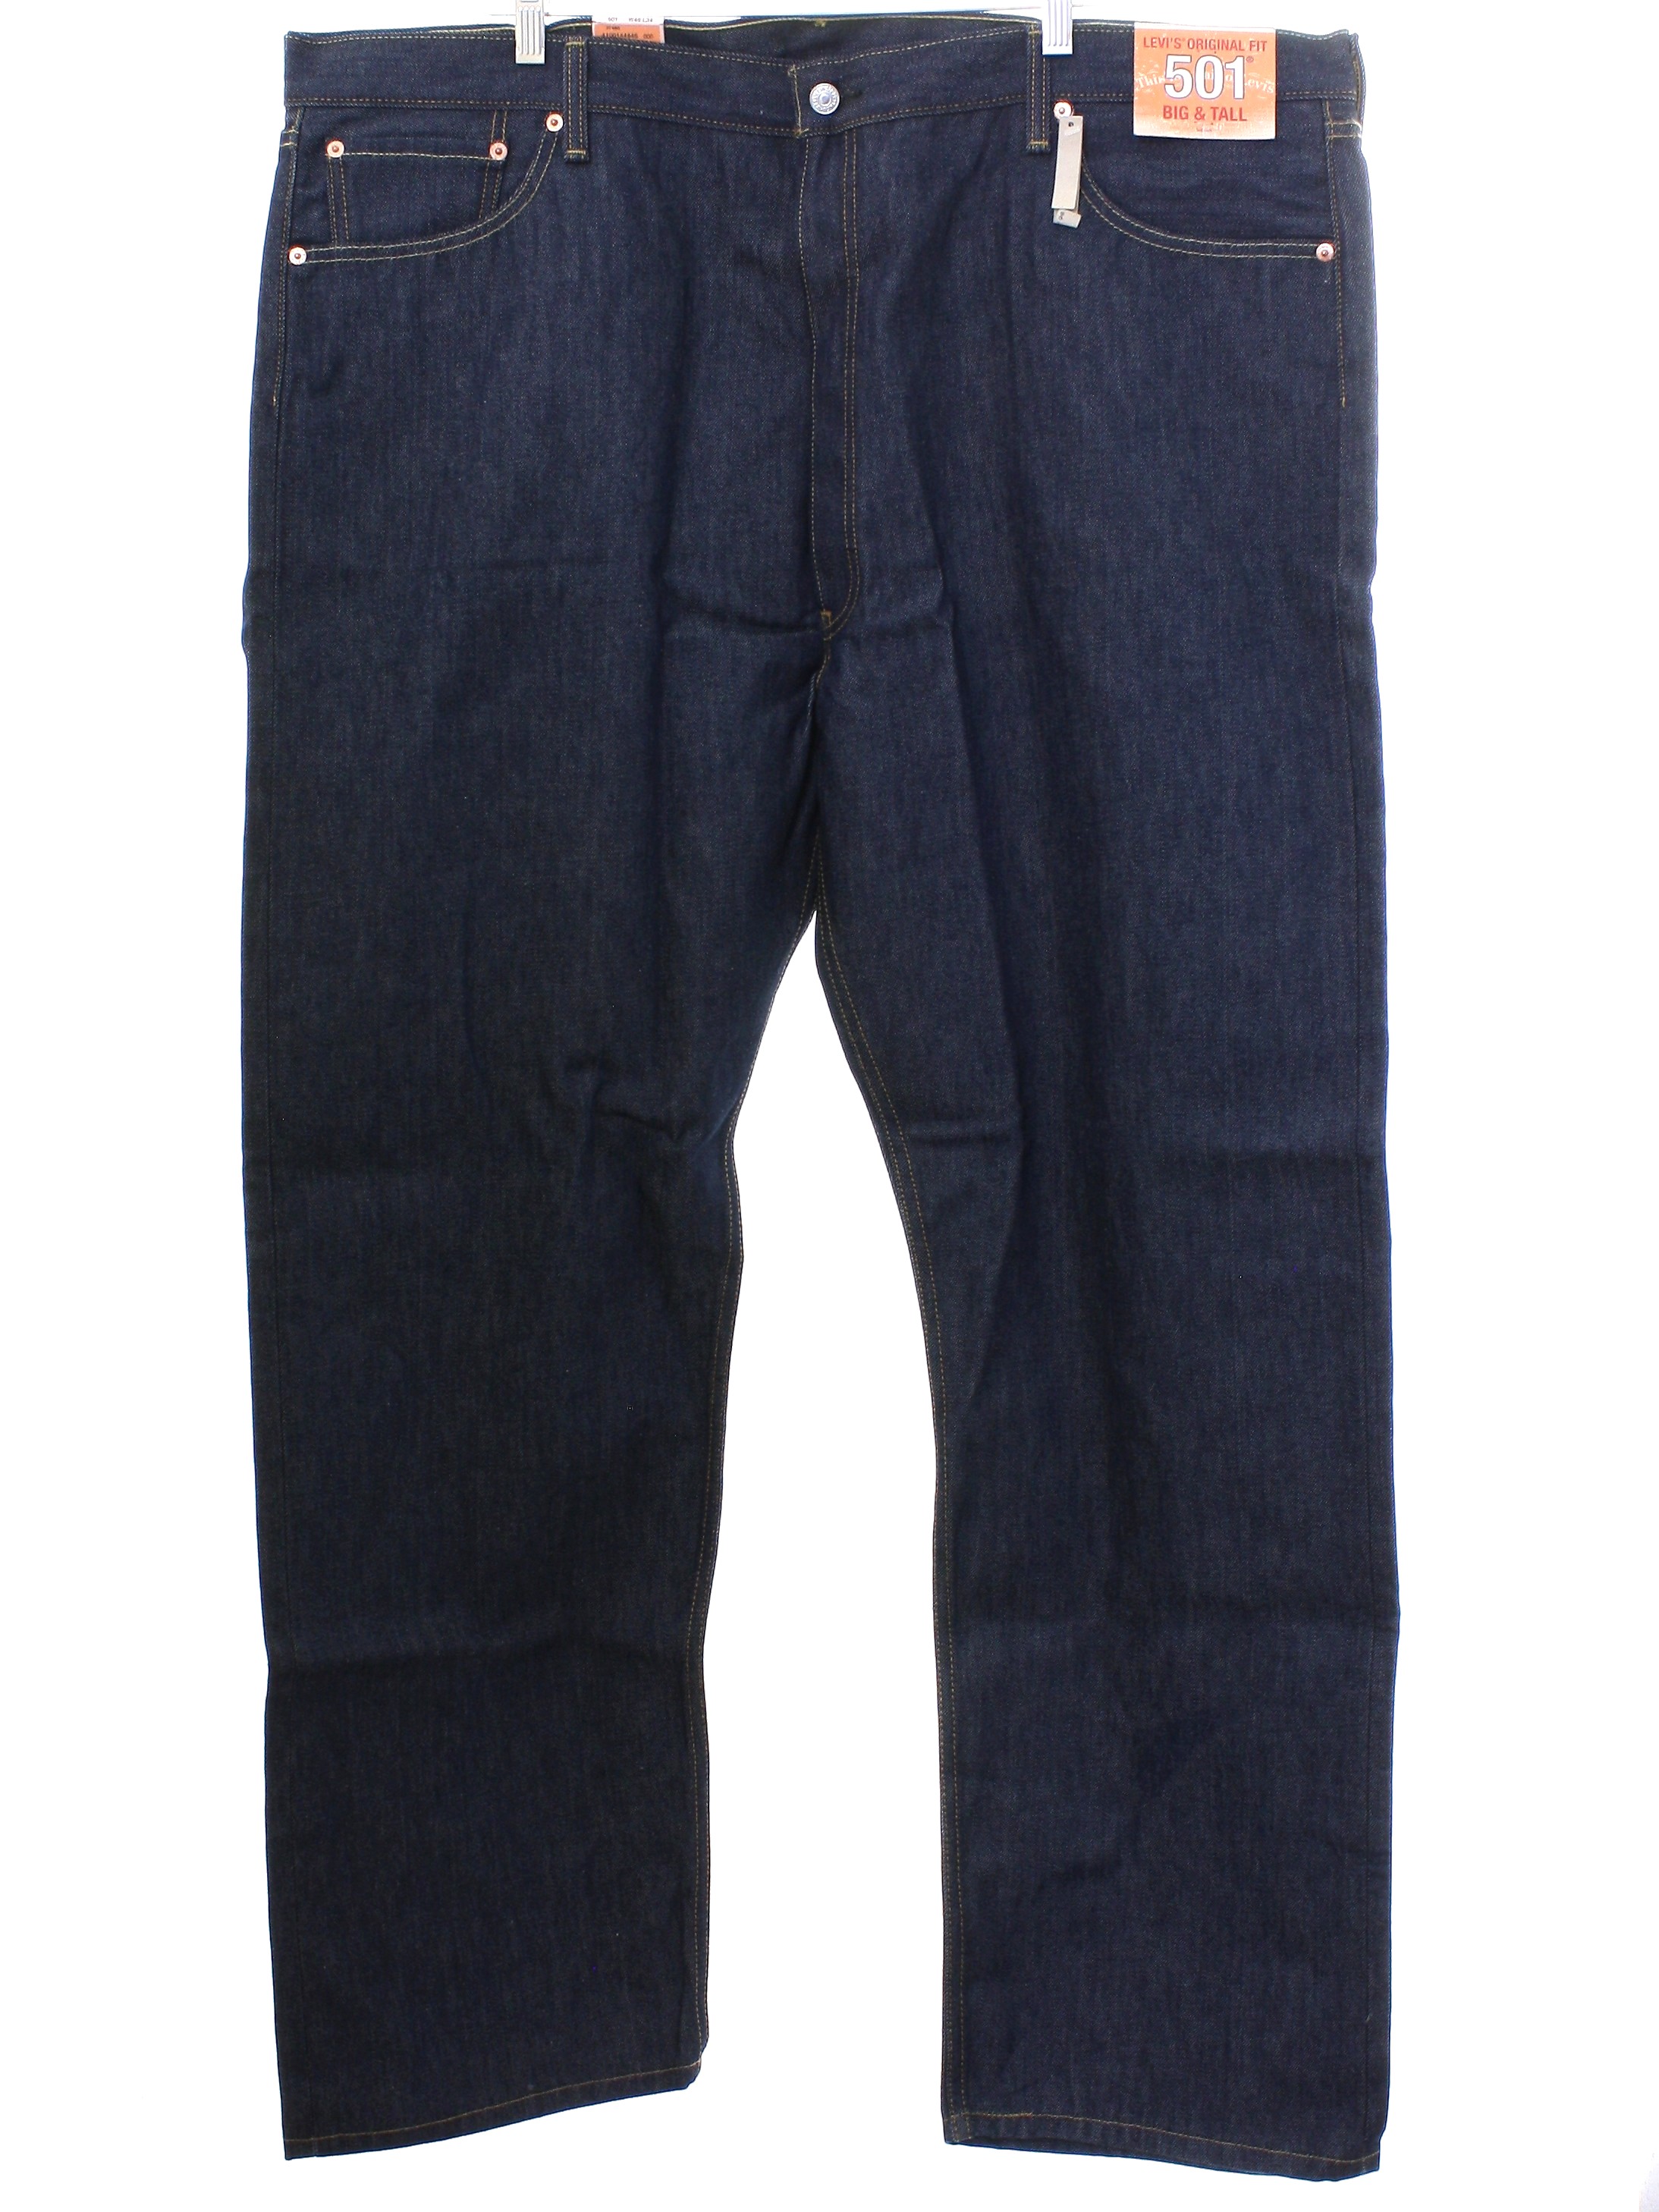 Vintage 1990's Pants: Late 90s -Levis 501s- Mens dark blue cotton denim ...